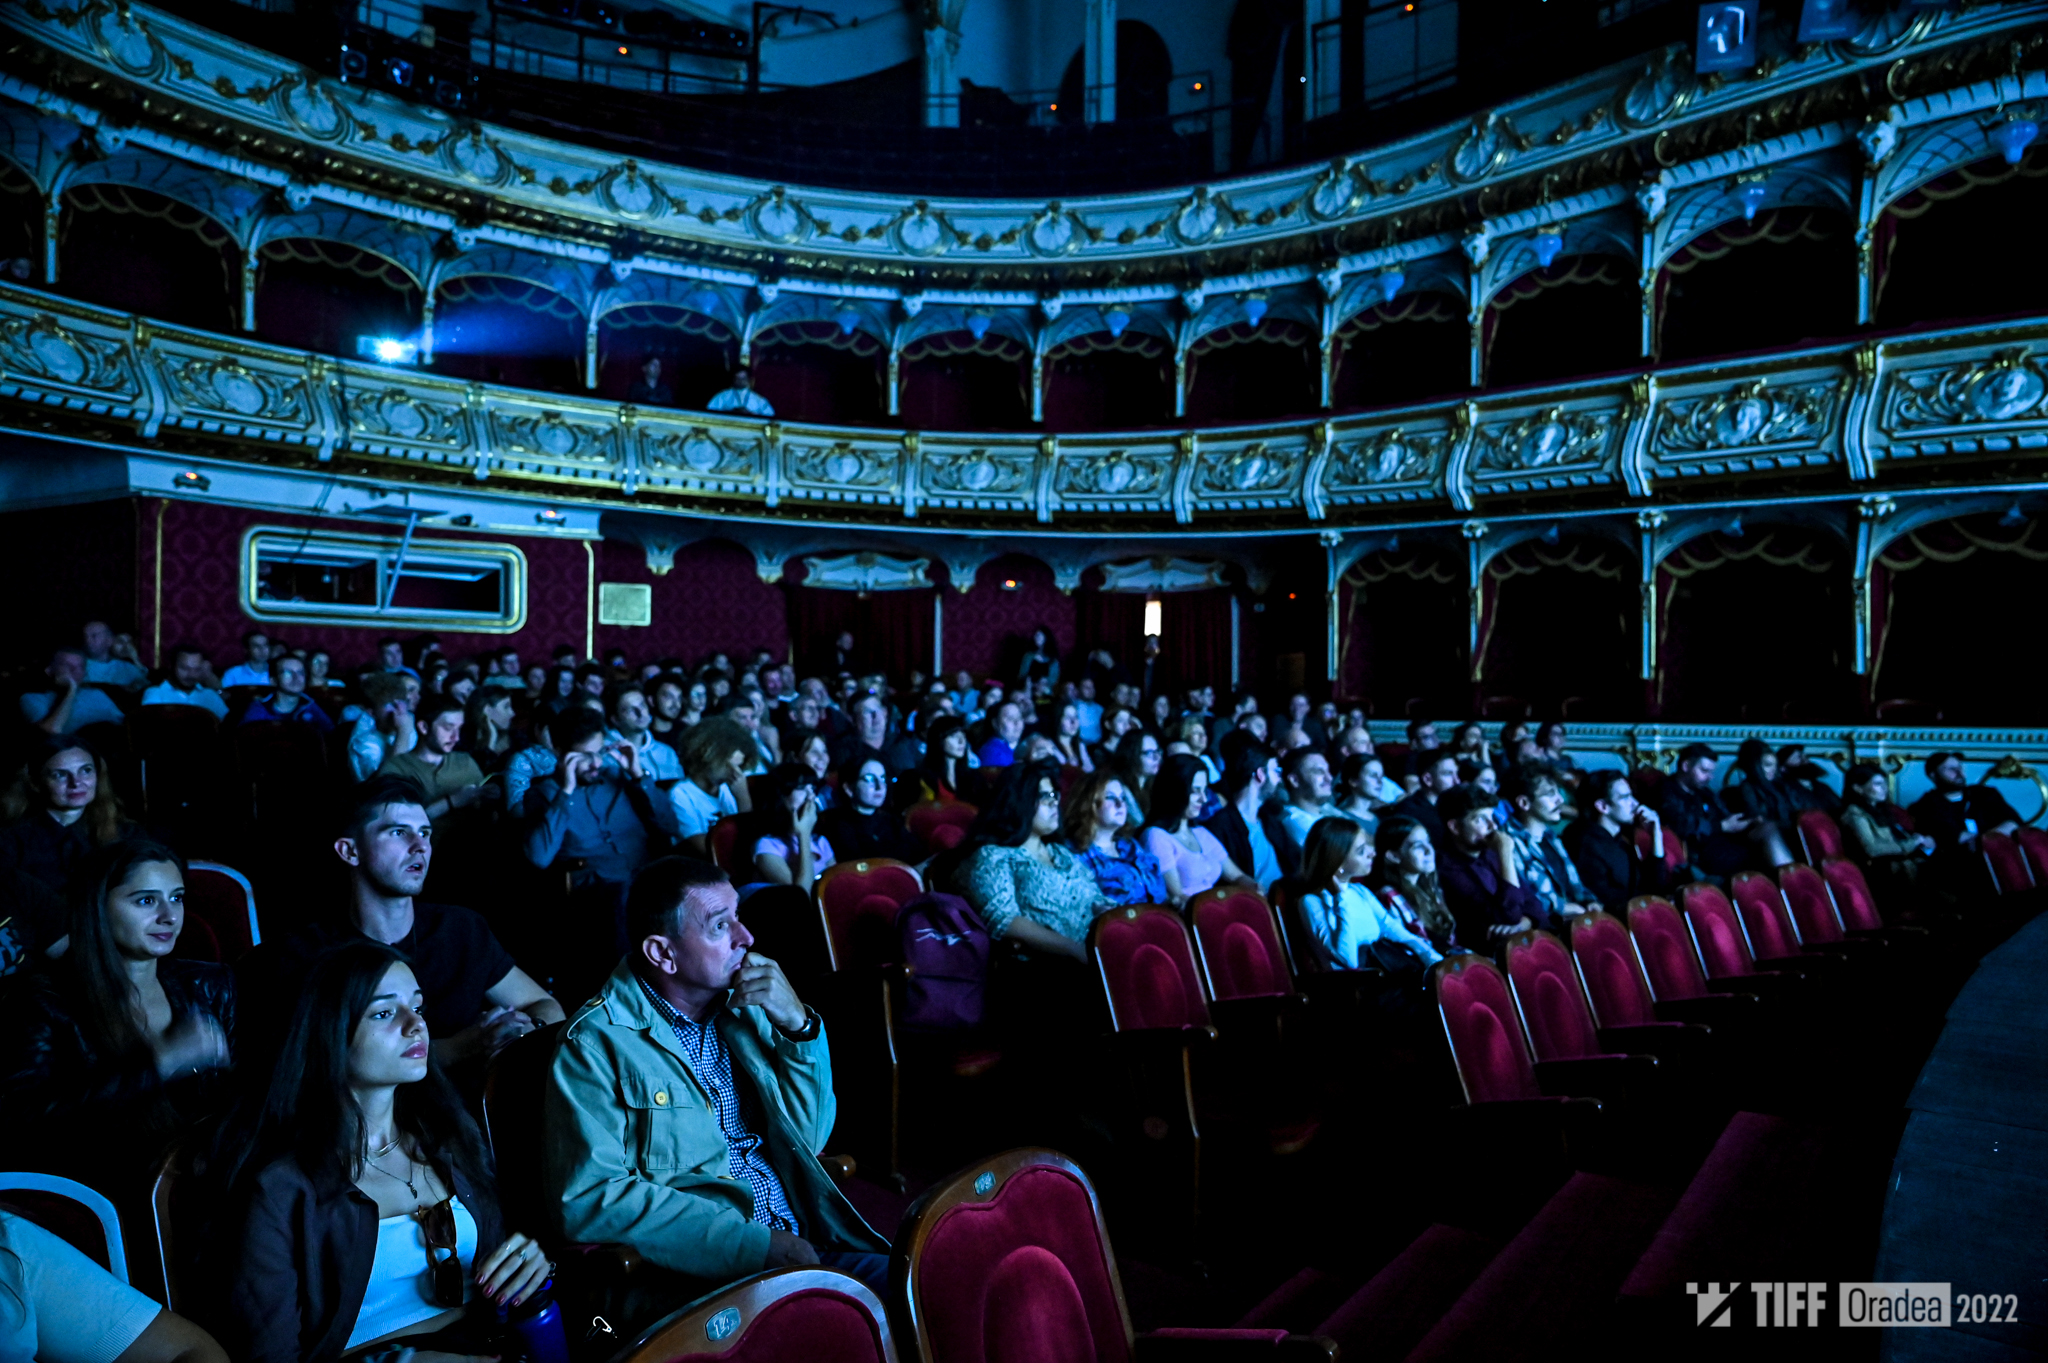 Teatru – Capra cu trei iezi – TIFF 2022 ORADEA – Petean Calin – 03.09.22 – web (16)